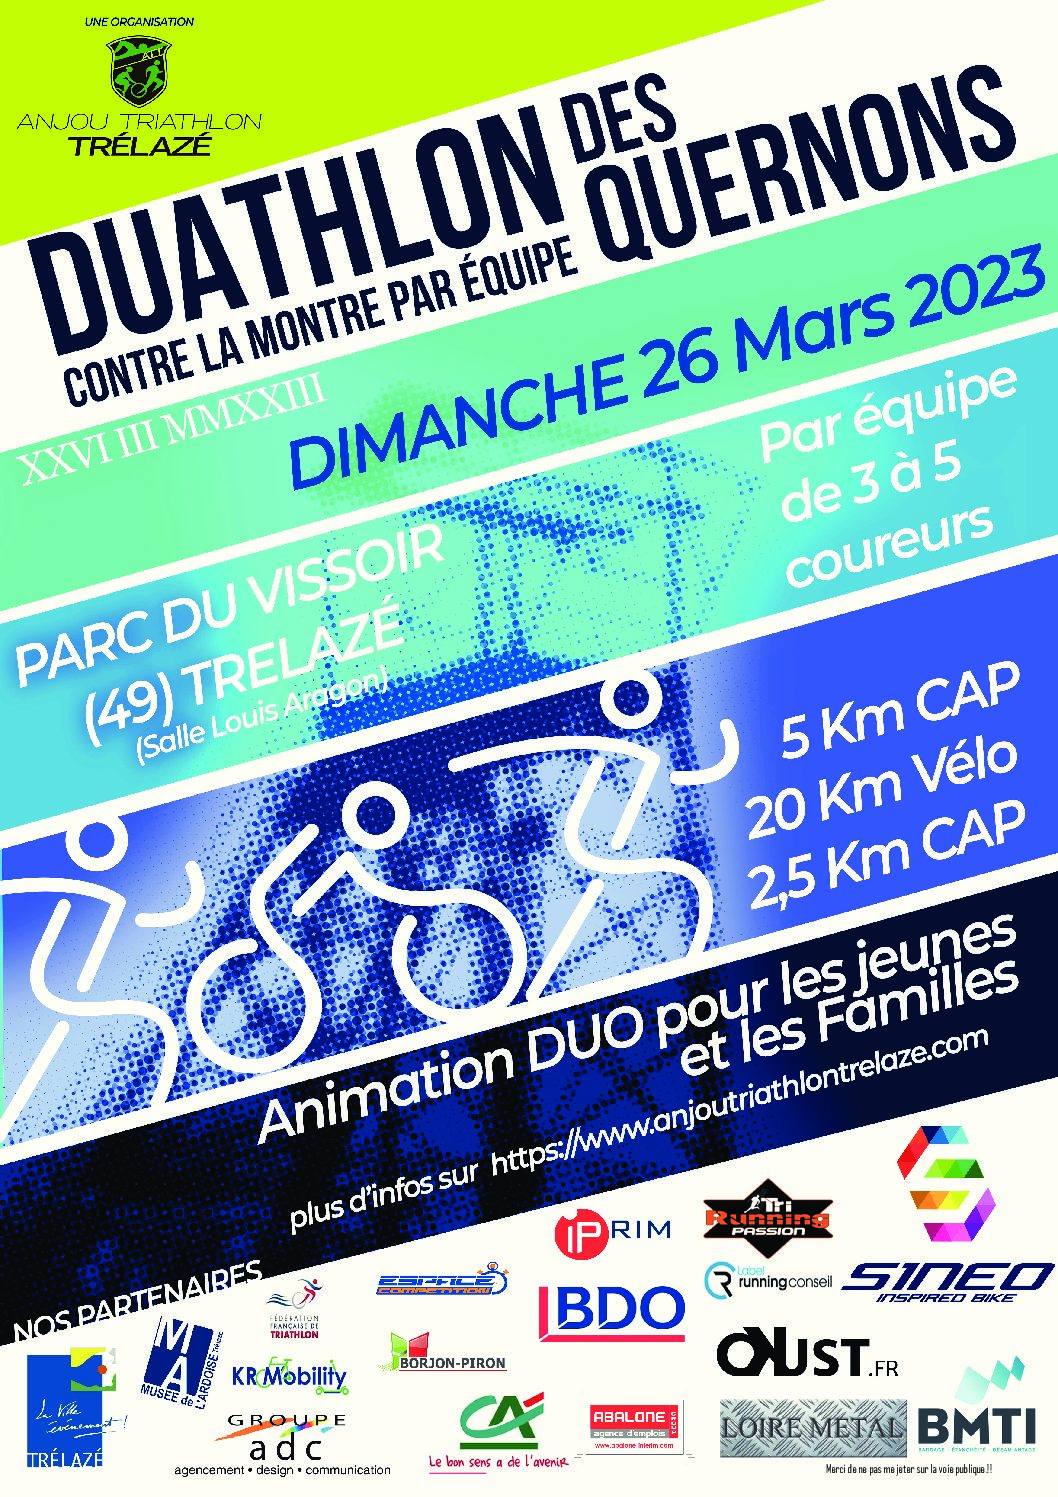 Image de l'évènement Anjou Triathlon Trélazé organise sa nouvelle édition du Duathlon des Quernons